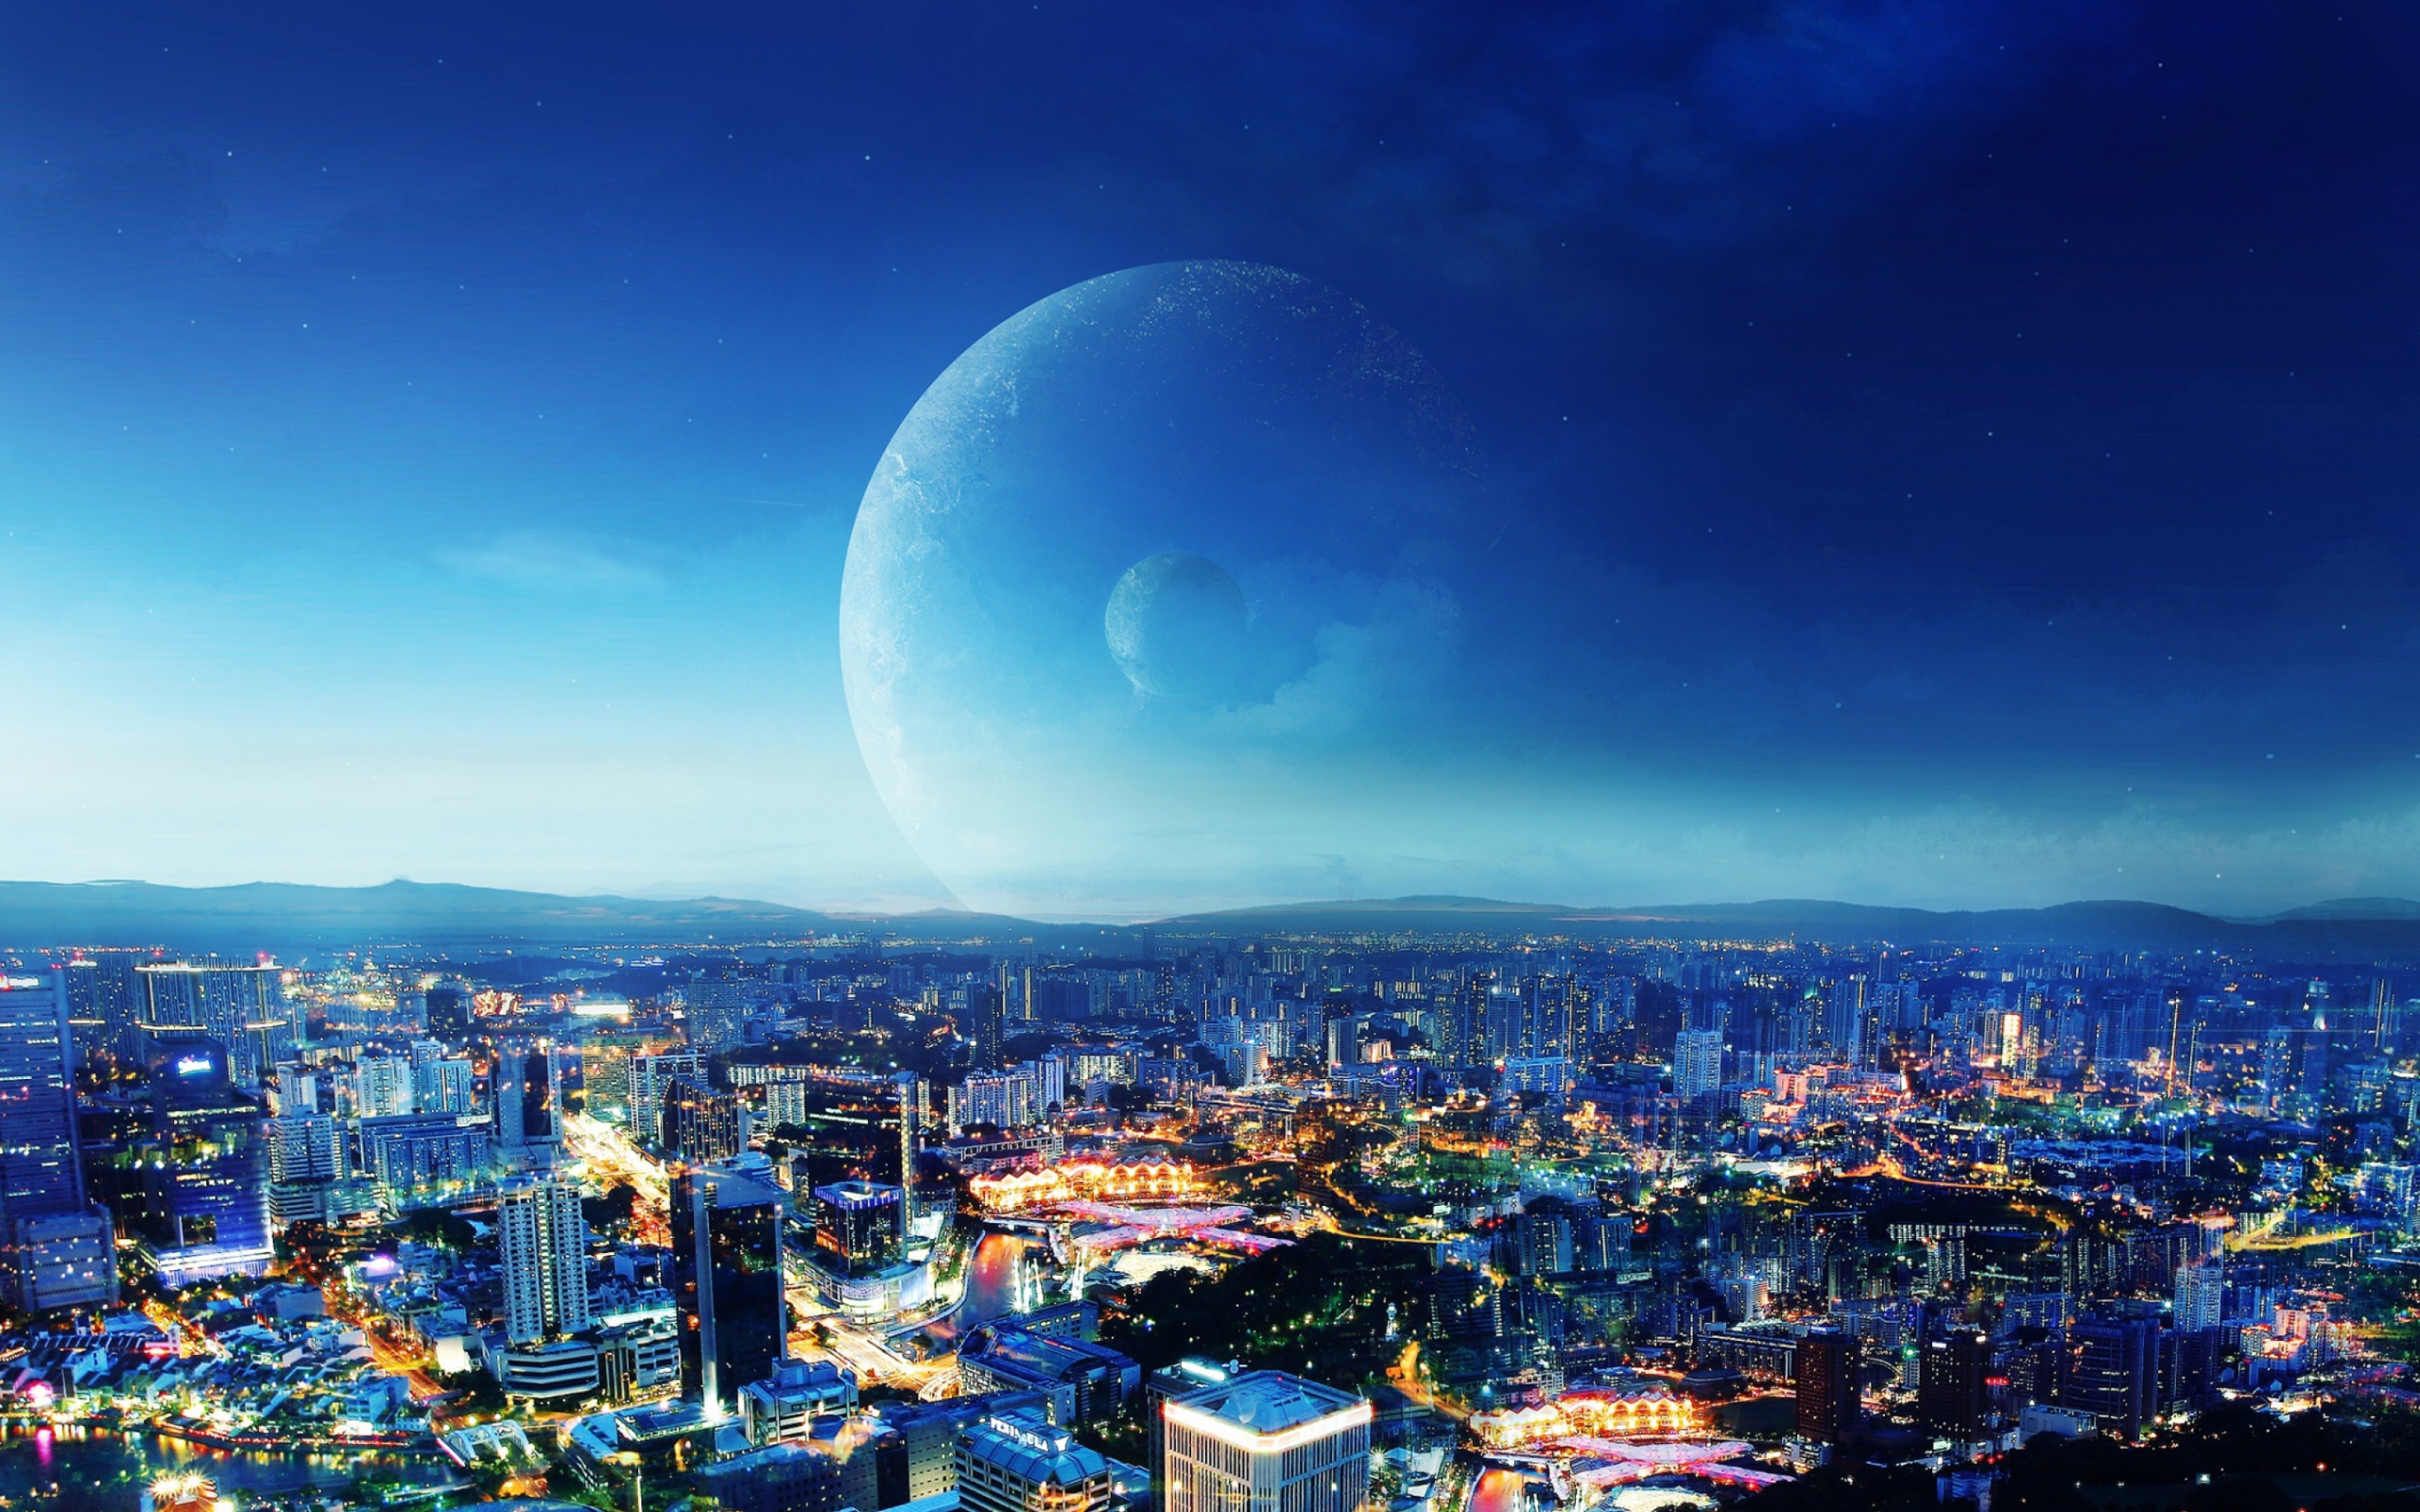 City Night Fantasy wallpaper 2560x1600